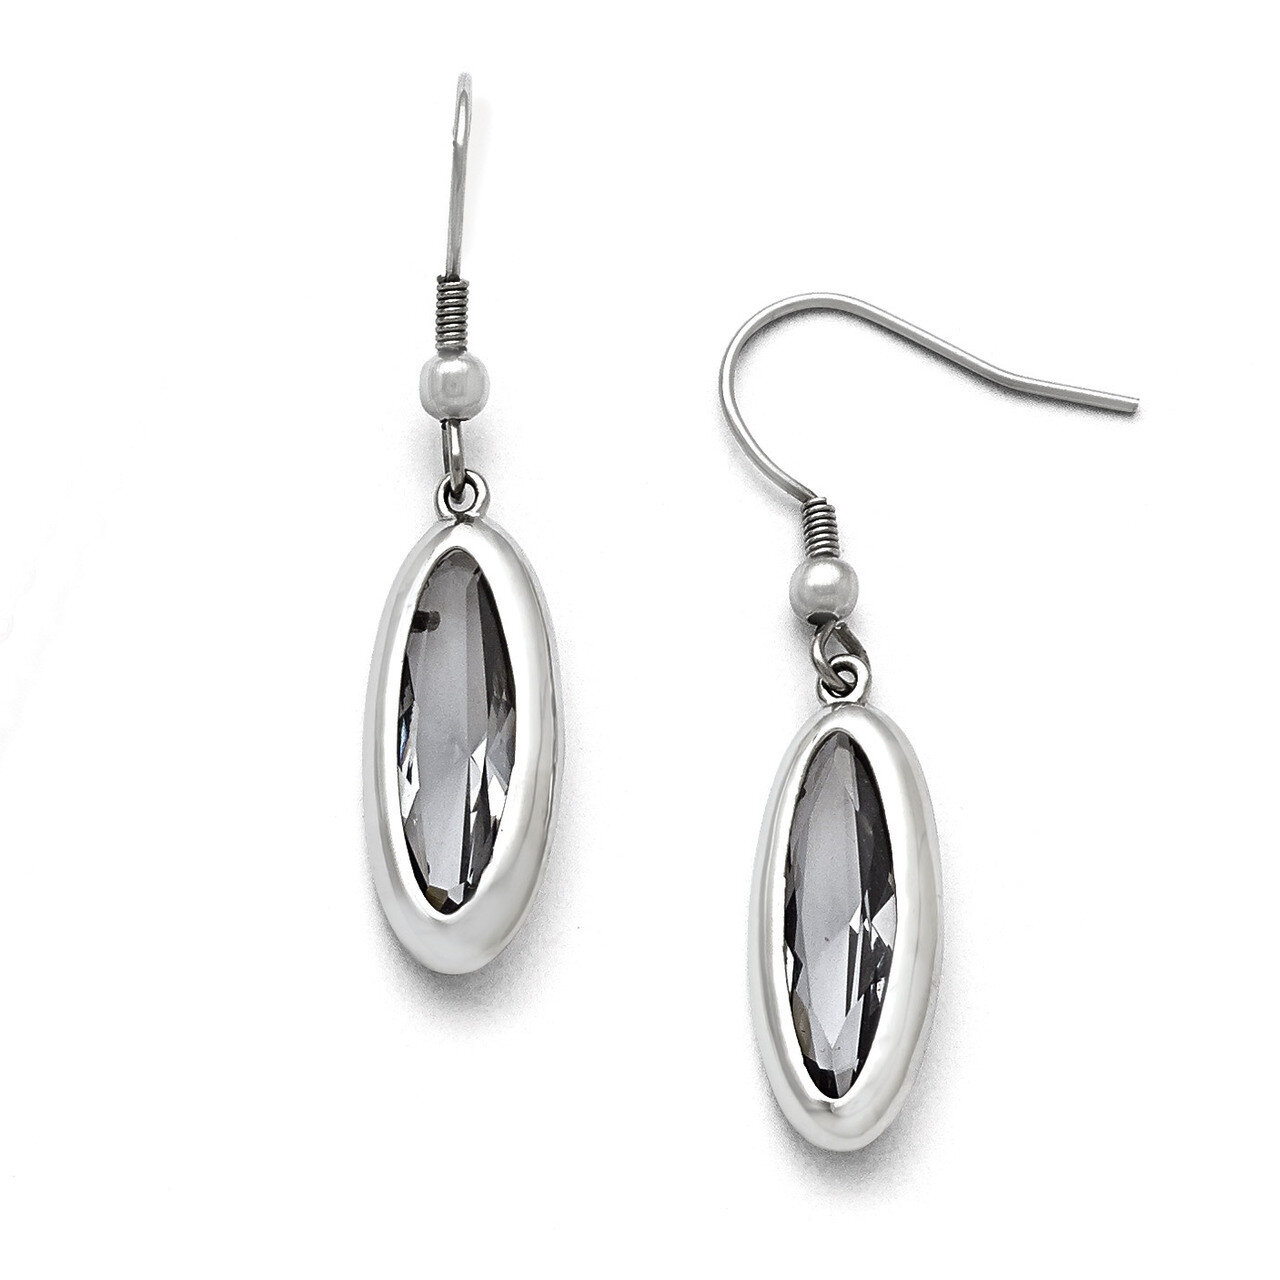 Polished Glass Oval Shepherd Hook Dangle Earrings - Stainless Steel SRE745